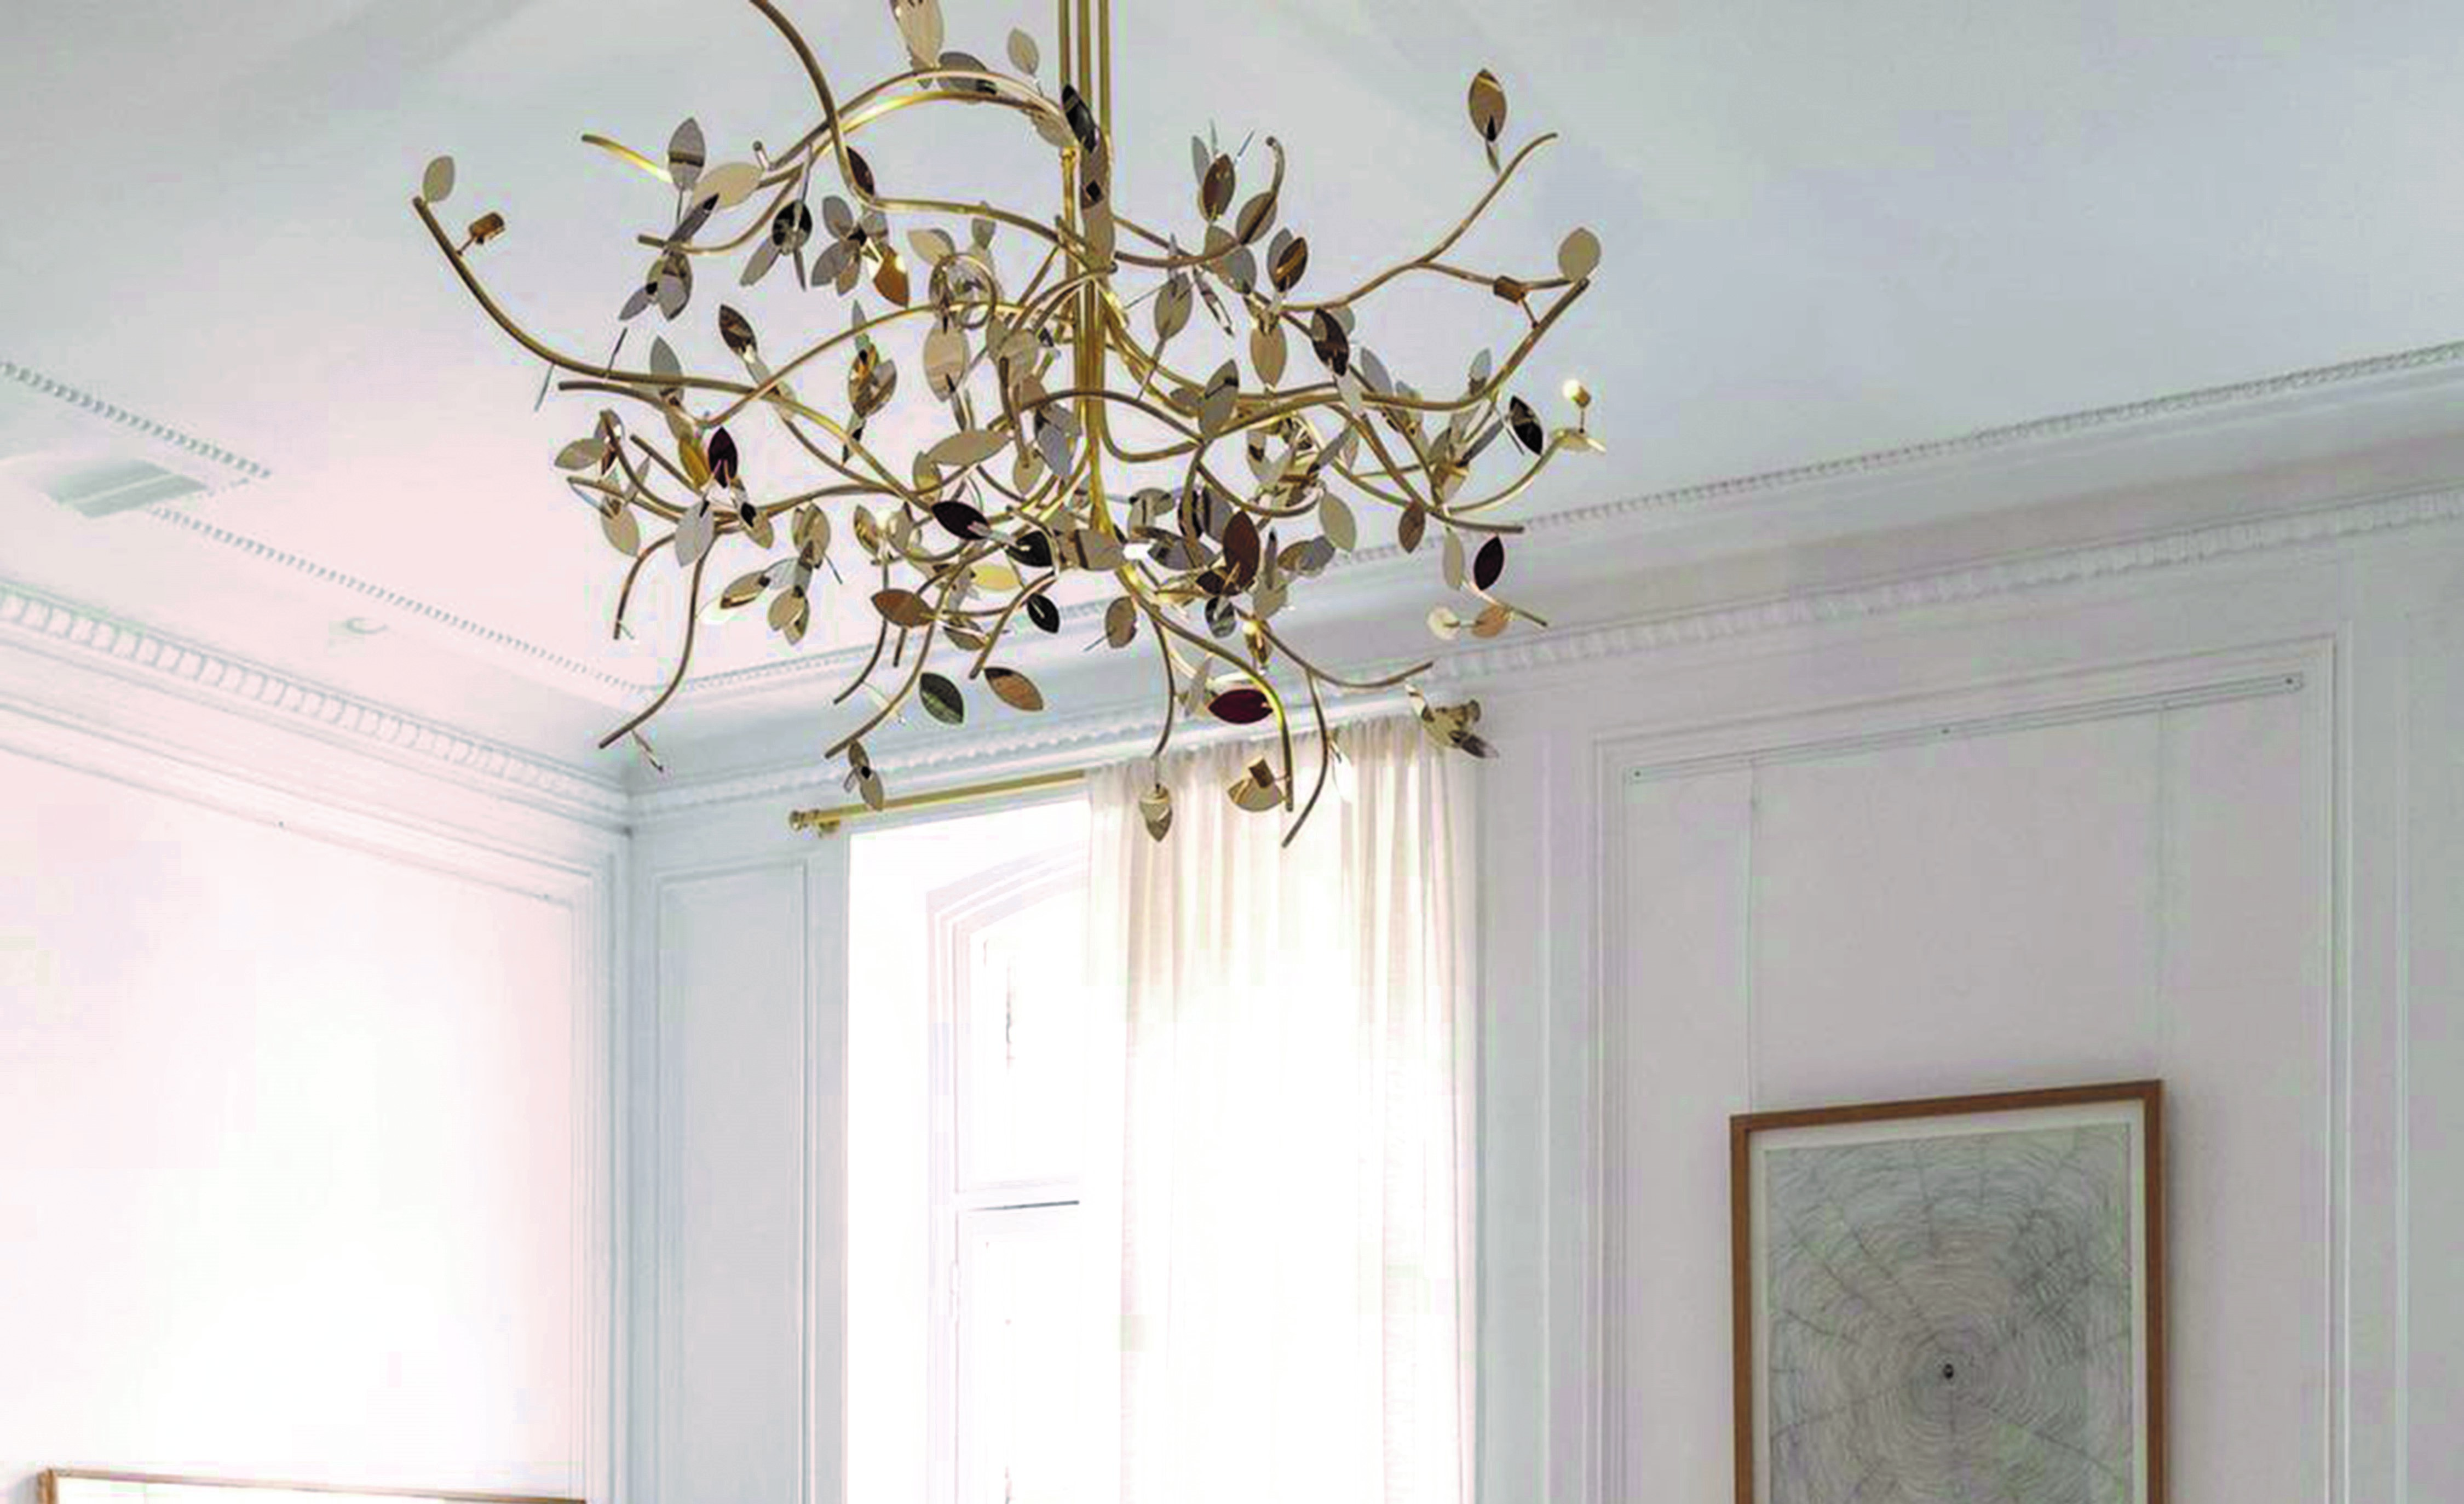 擅長使用黃銅的 Mydriaz，從燈具到家具都能透過歷史歲月的變化，體現出優雅雋永的氣度。